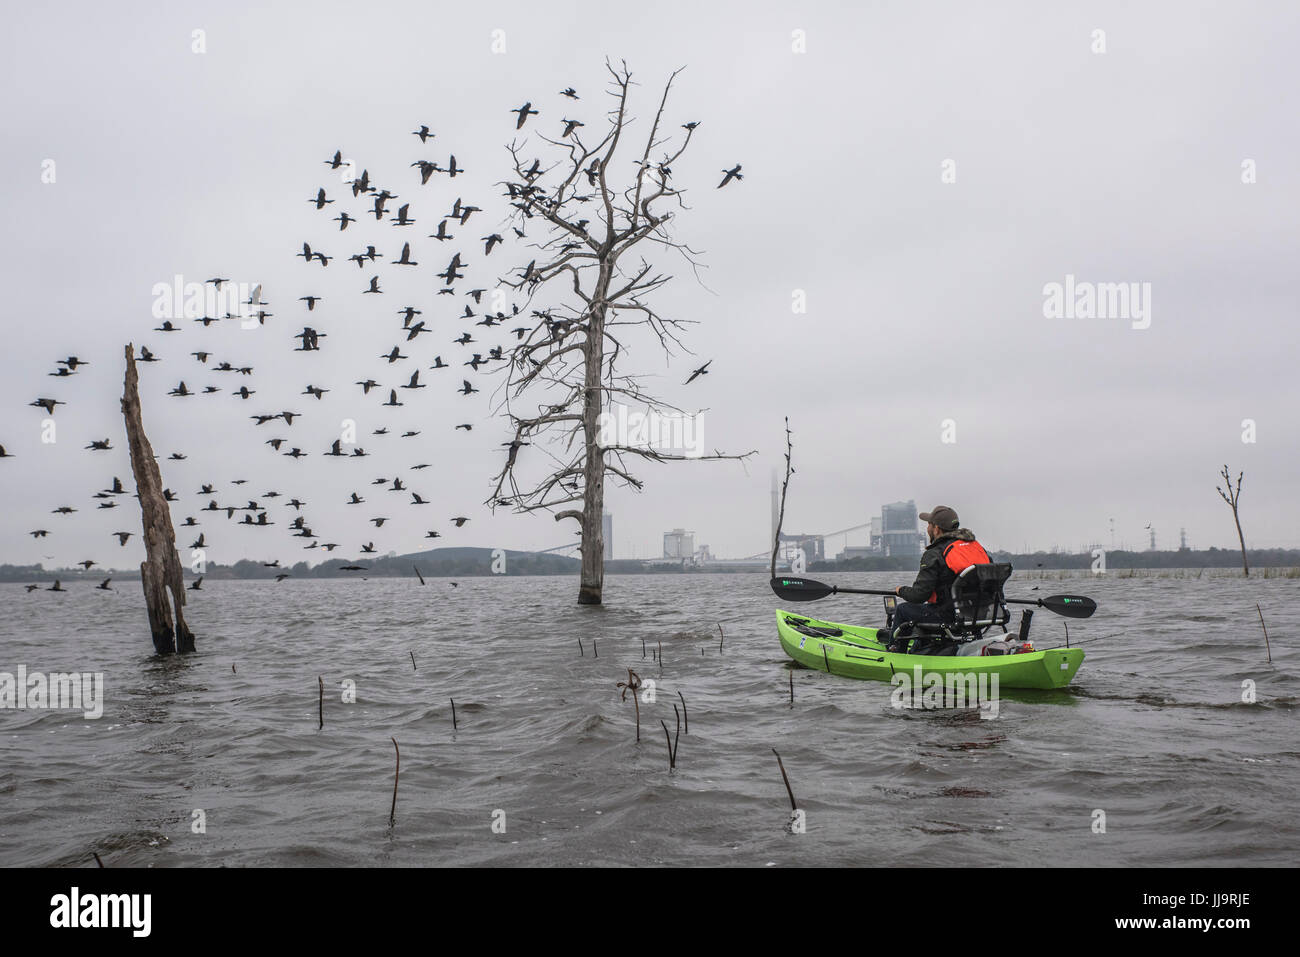 Uomo in canoa guardando gli uccelli in volo da alberi immersi in acqua Foto Stock